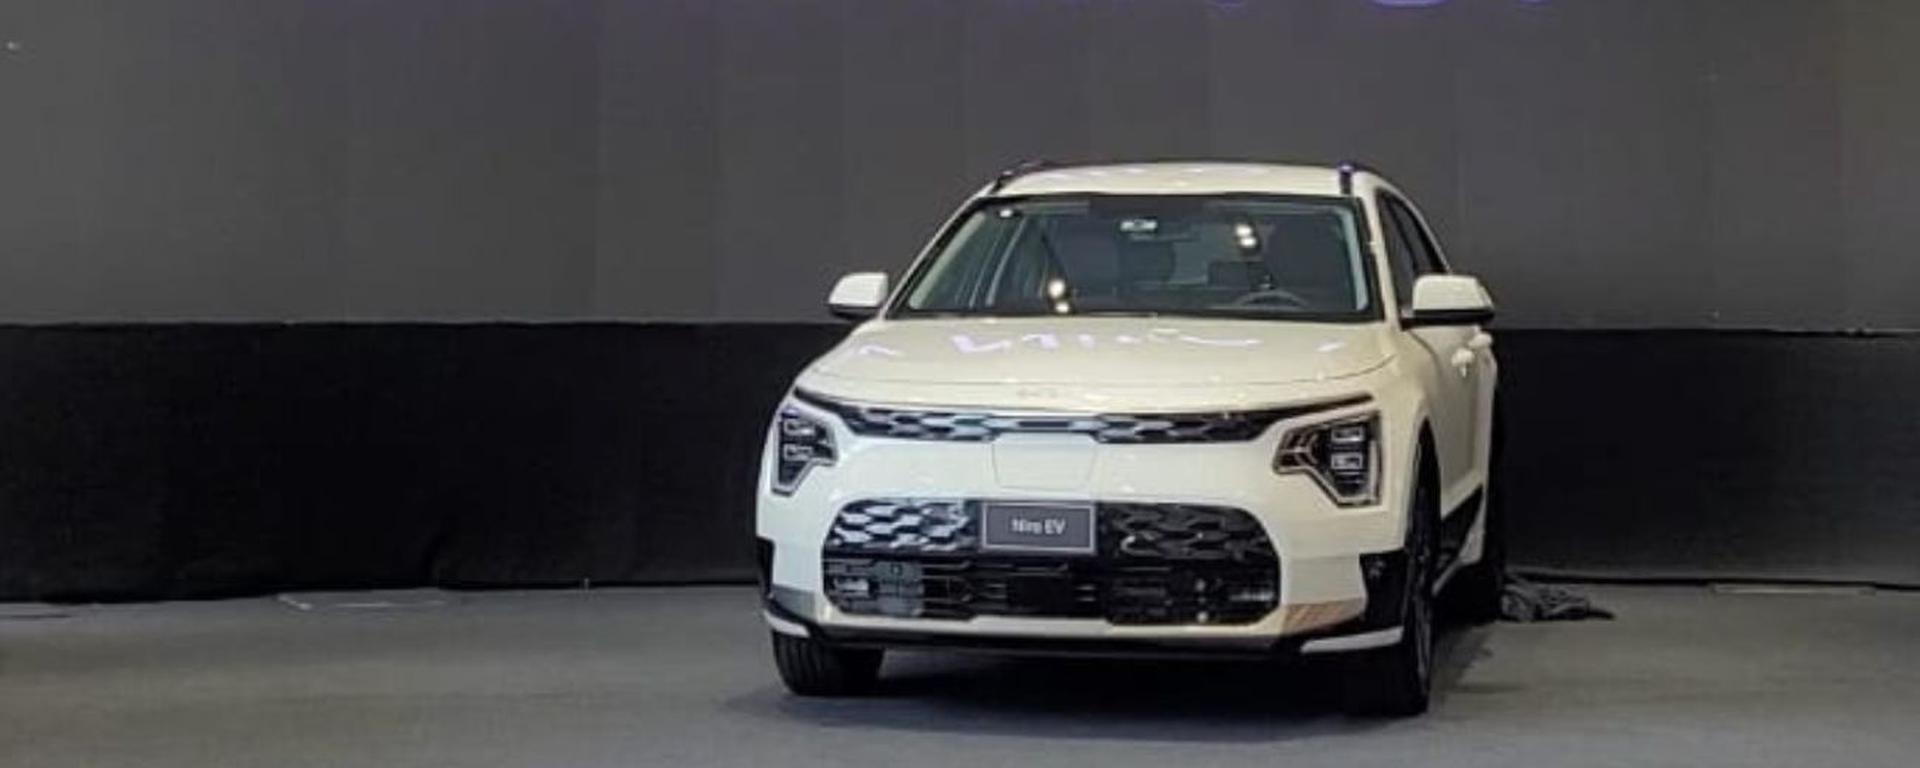 Kia All New Niro EV: el SUV 100% eléctrico llega al Perú desde US$53.490 y con 460 km de autonomía